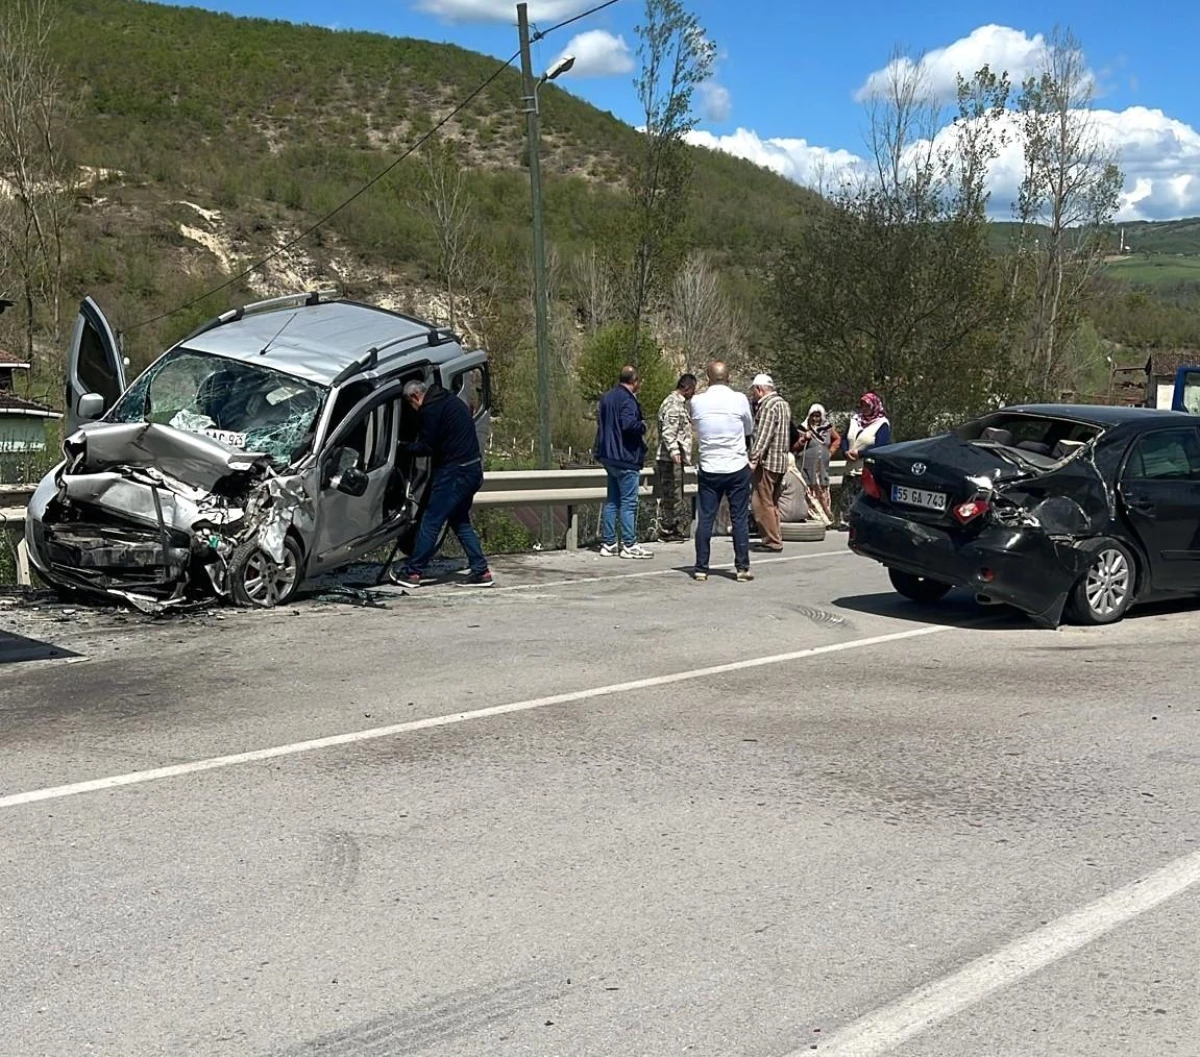 Samsun’da otomobil ile ticari araç çarpıştı: 5 yaralı